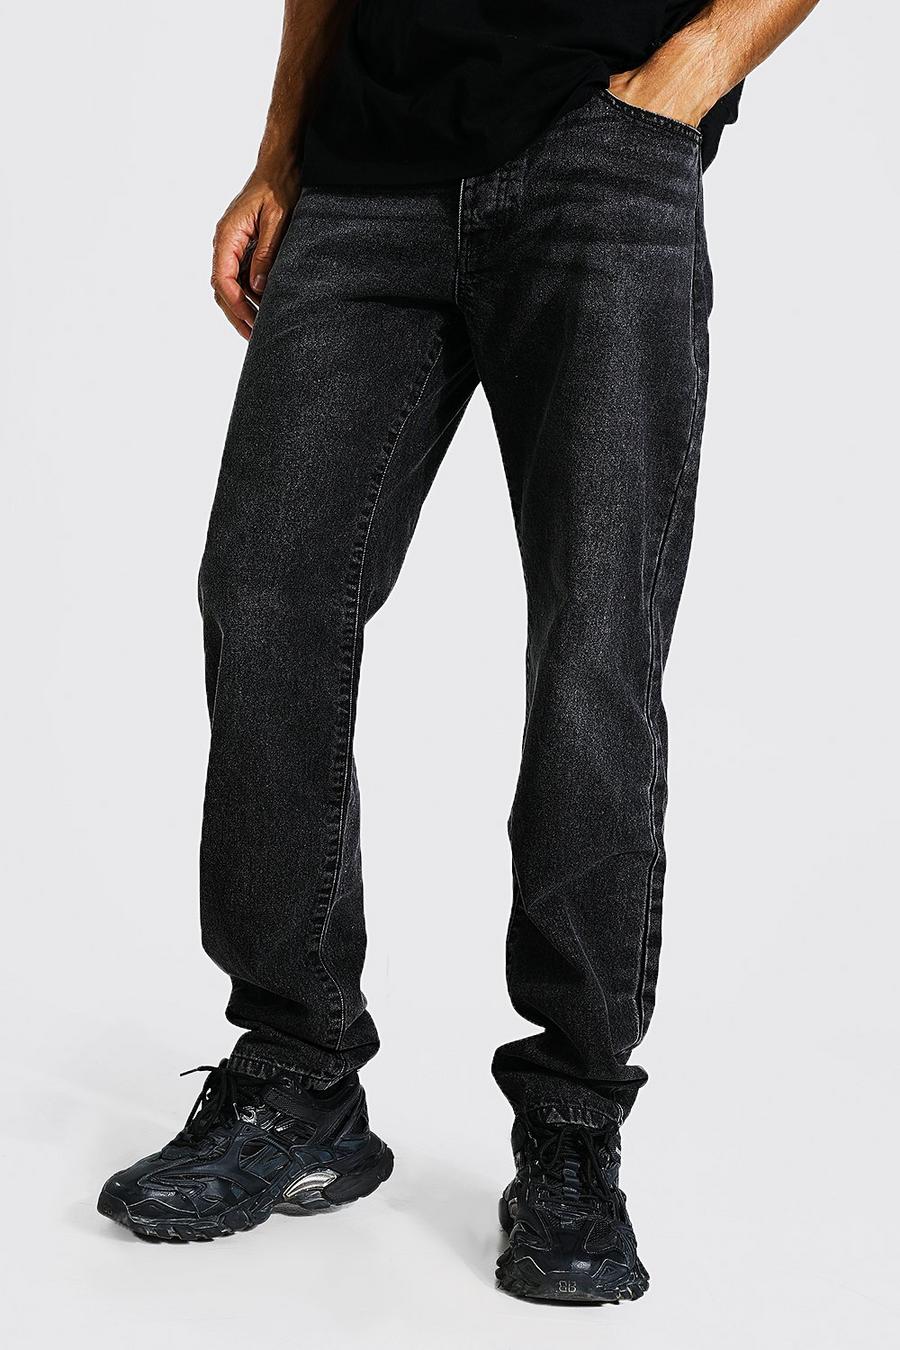 Jeans Tall rilassati con cotone riciclato, Charcoal gris